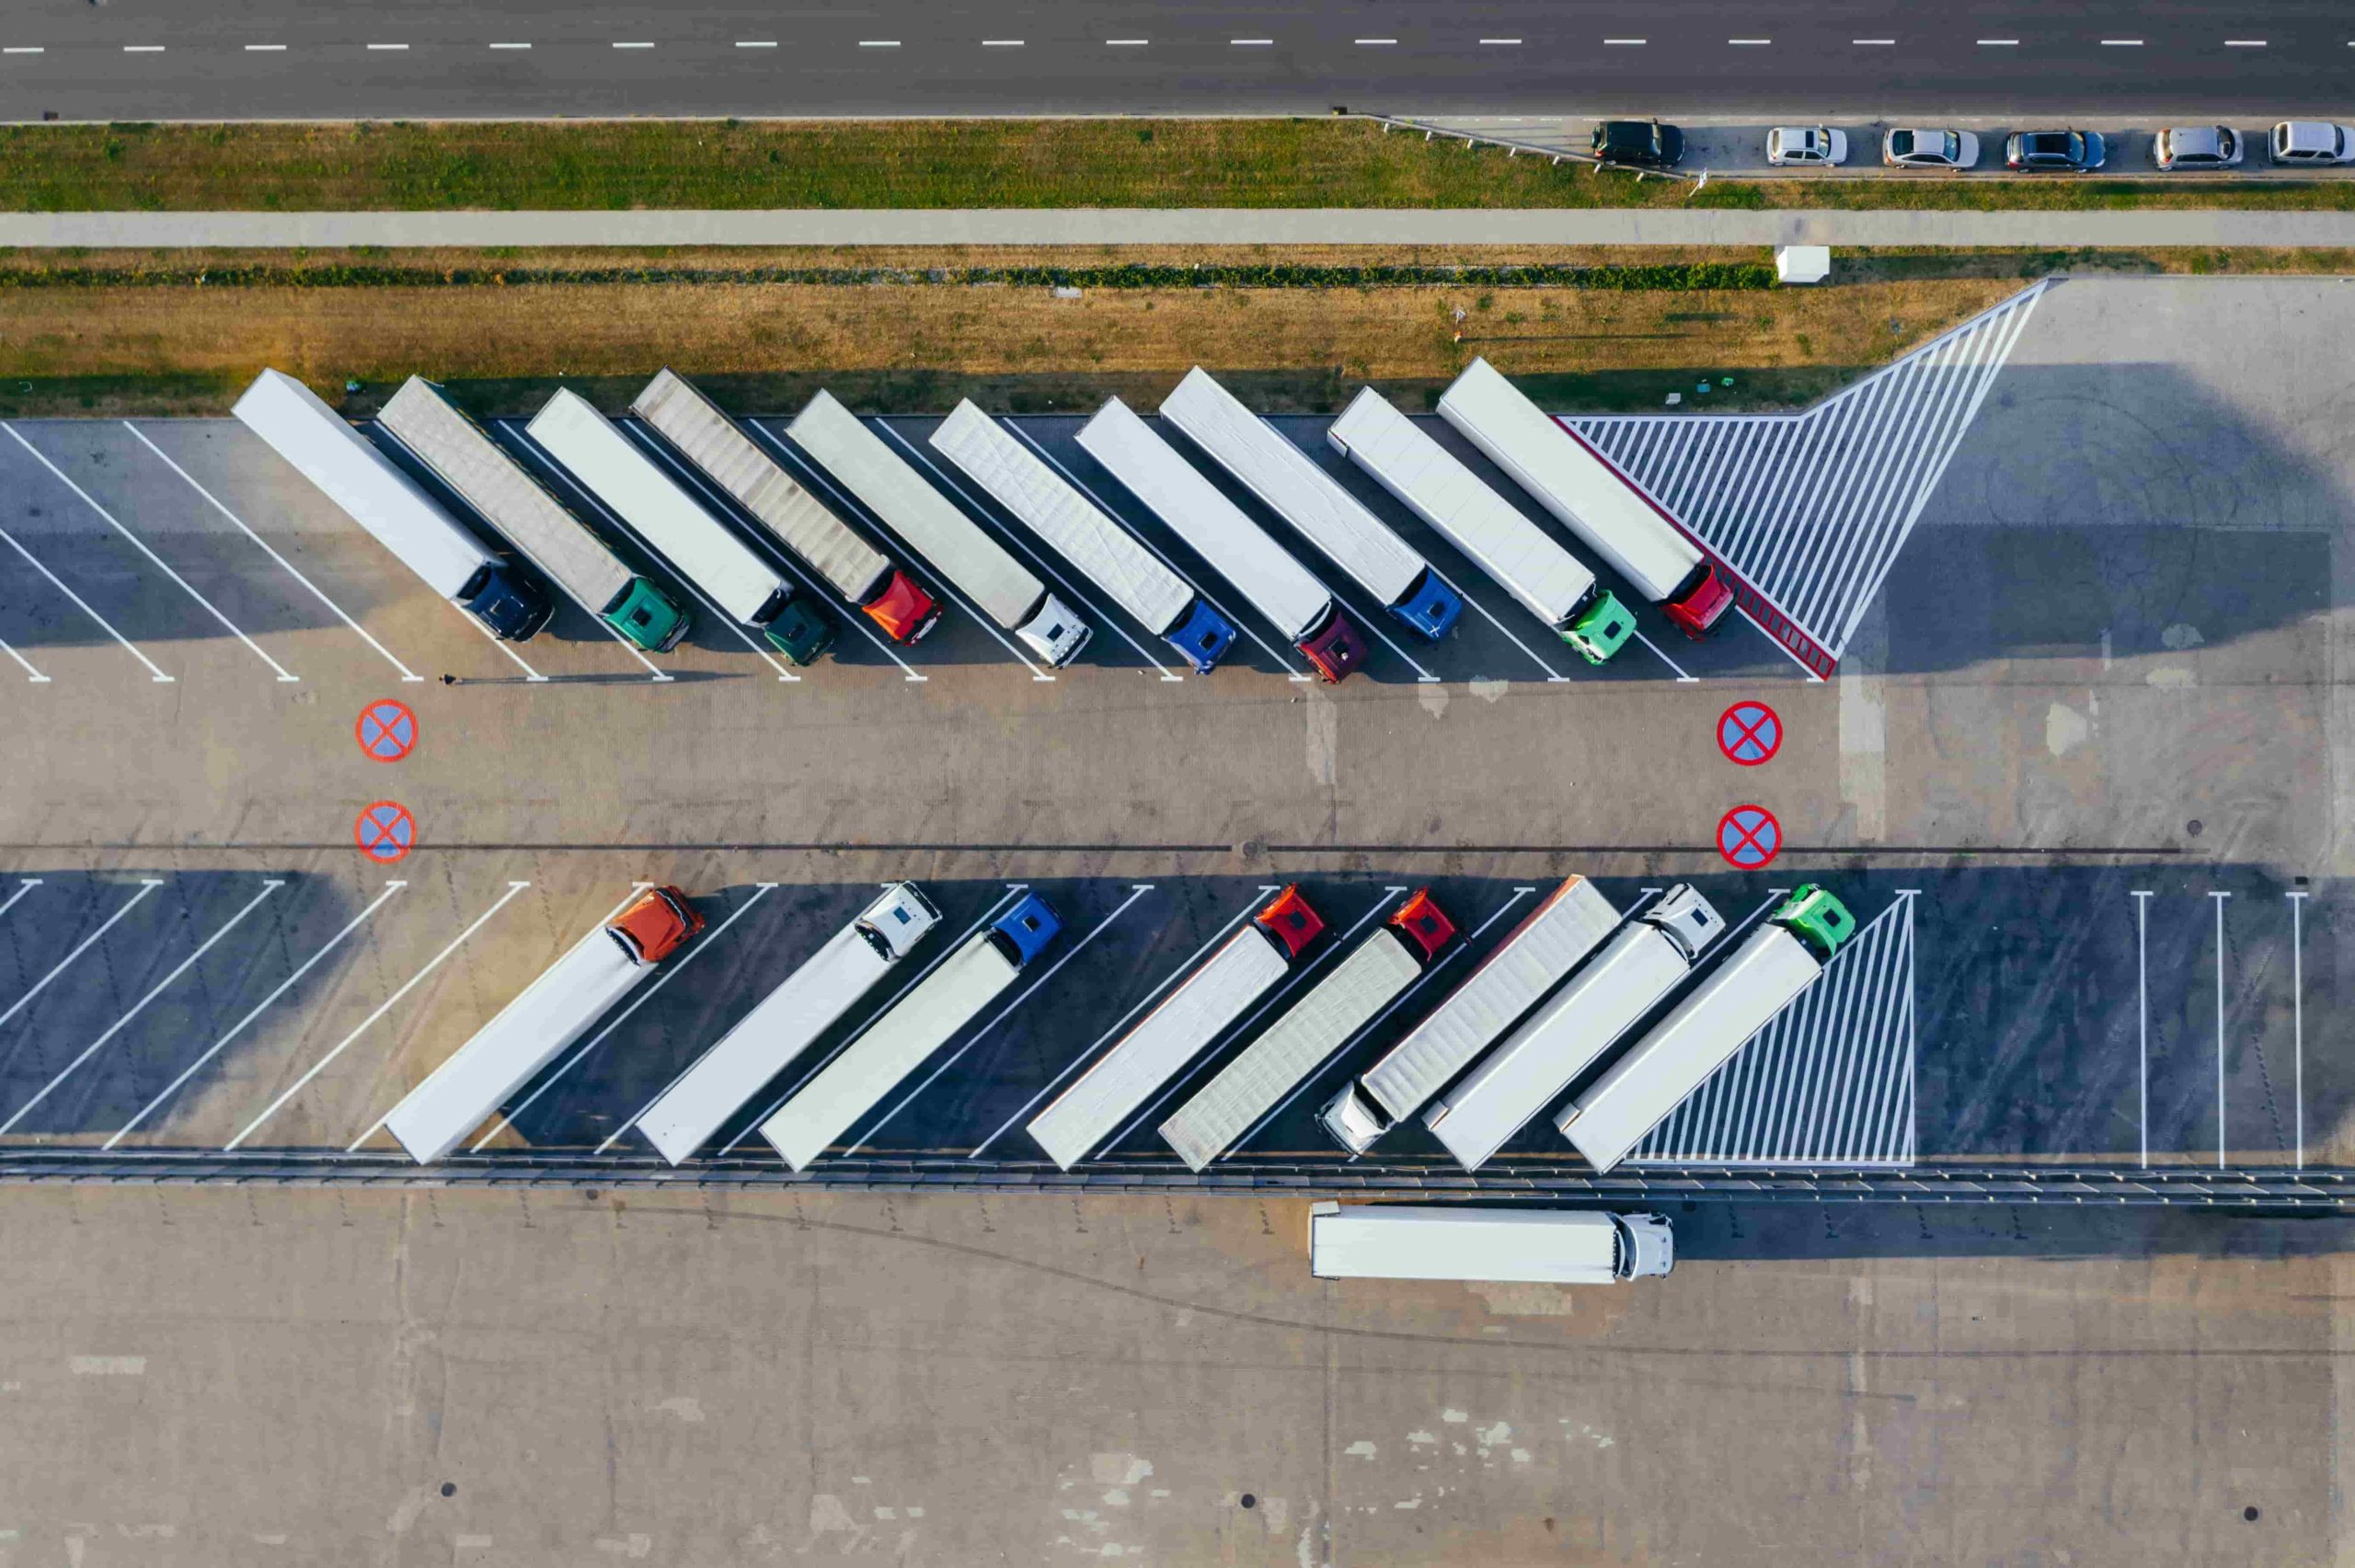 camiones de cargo estacionados